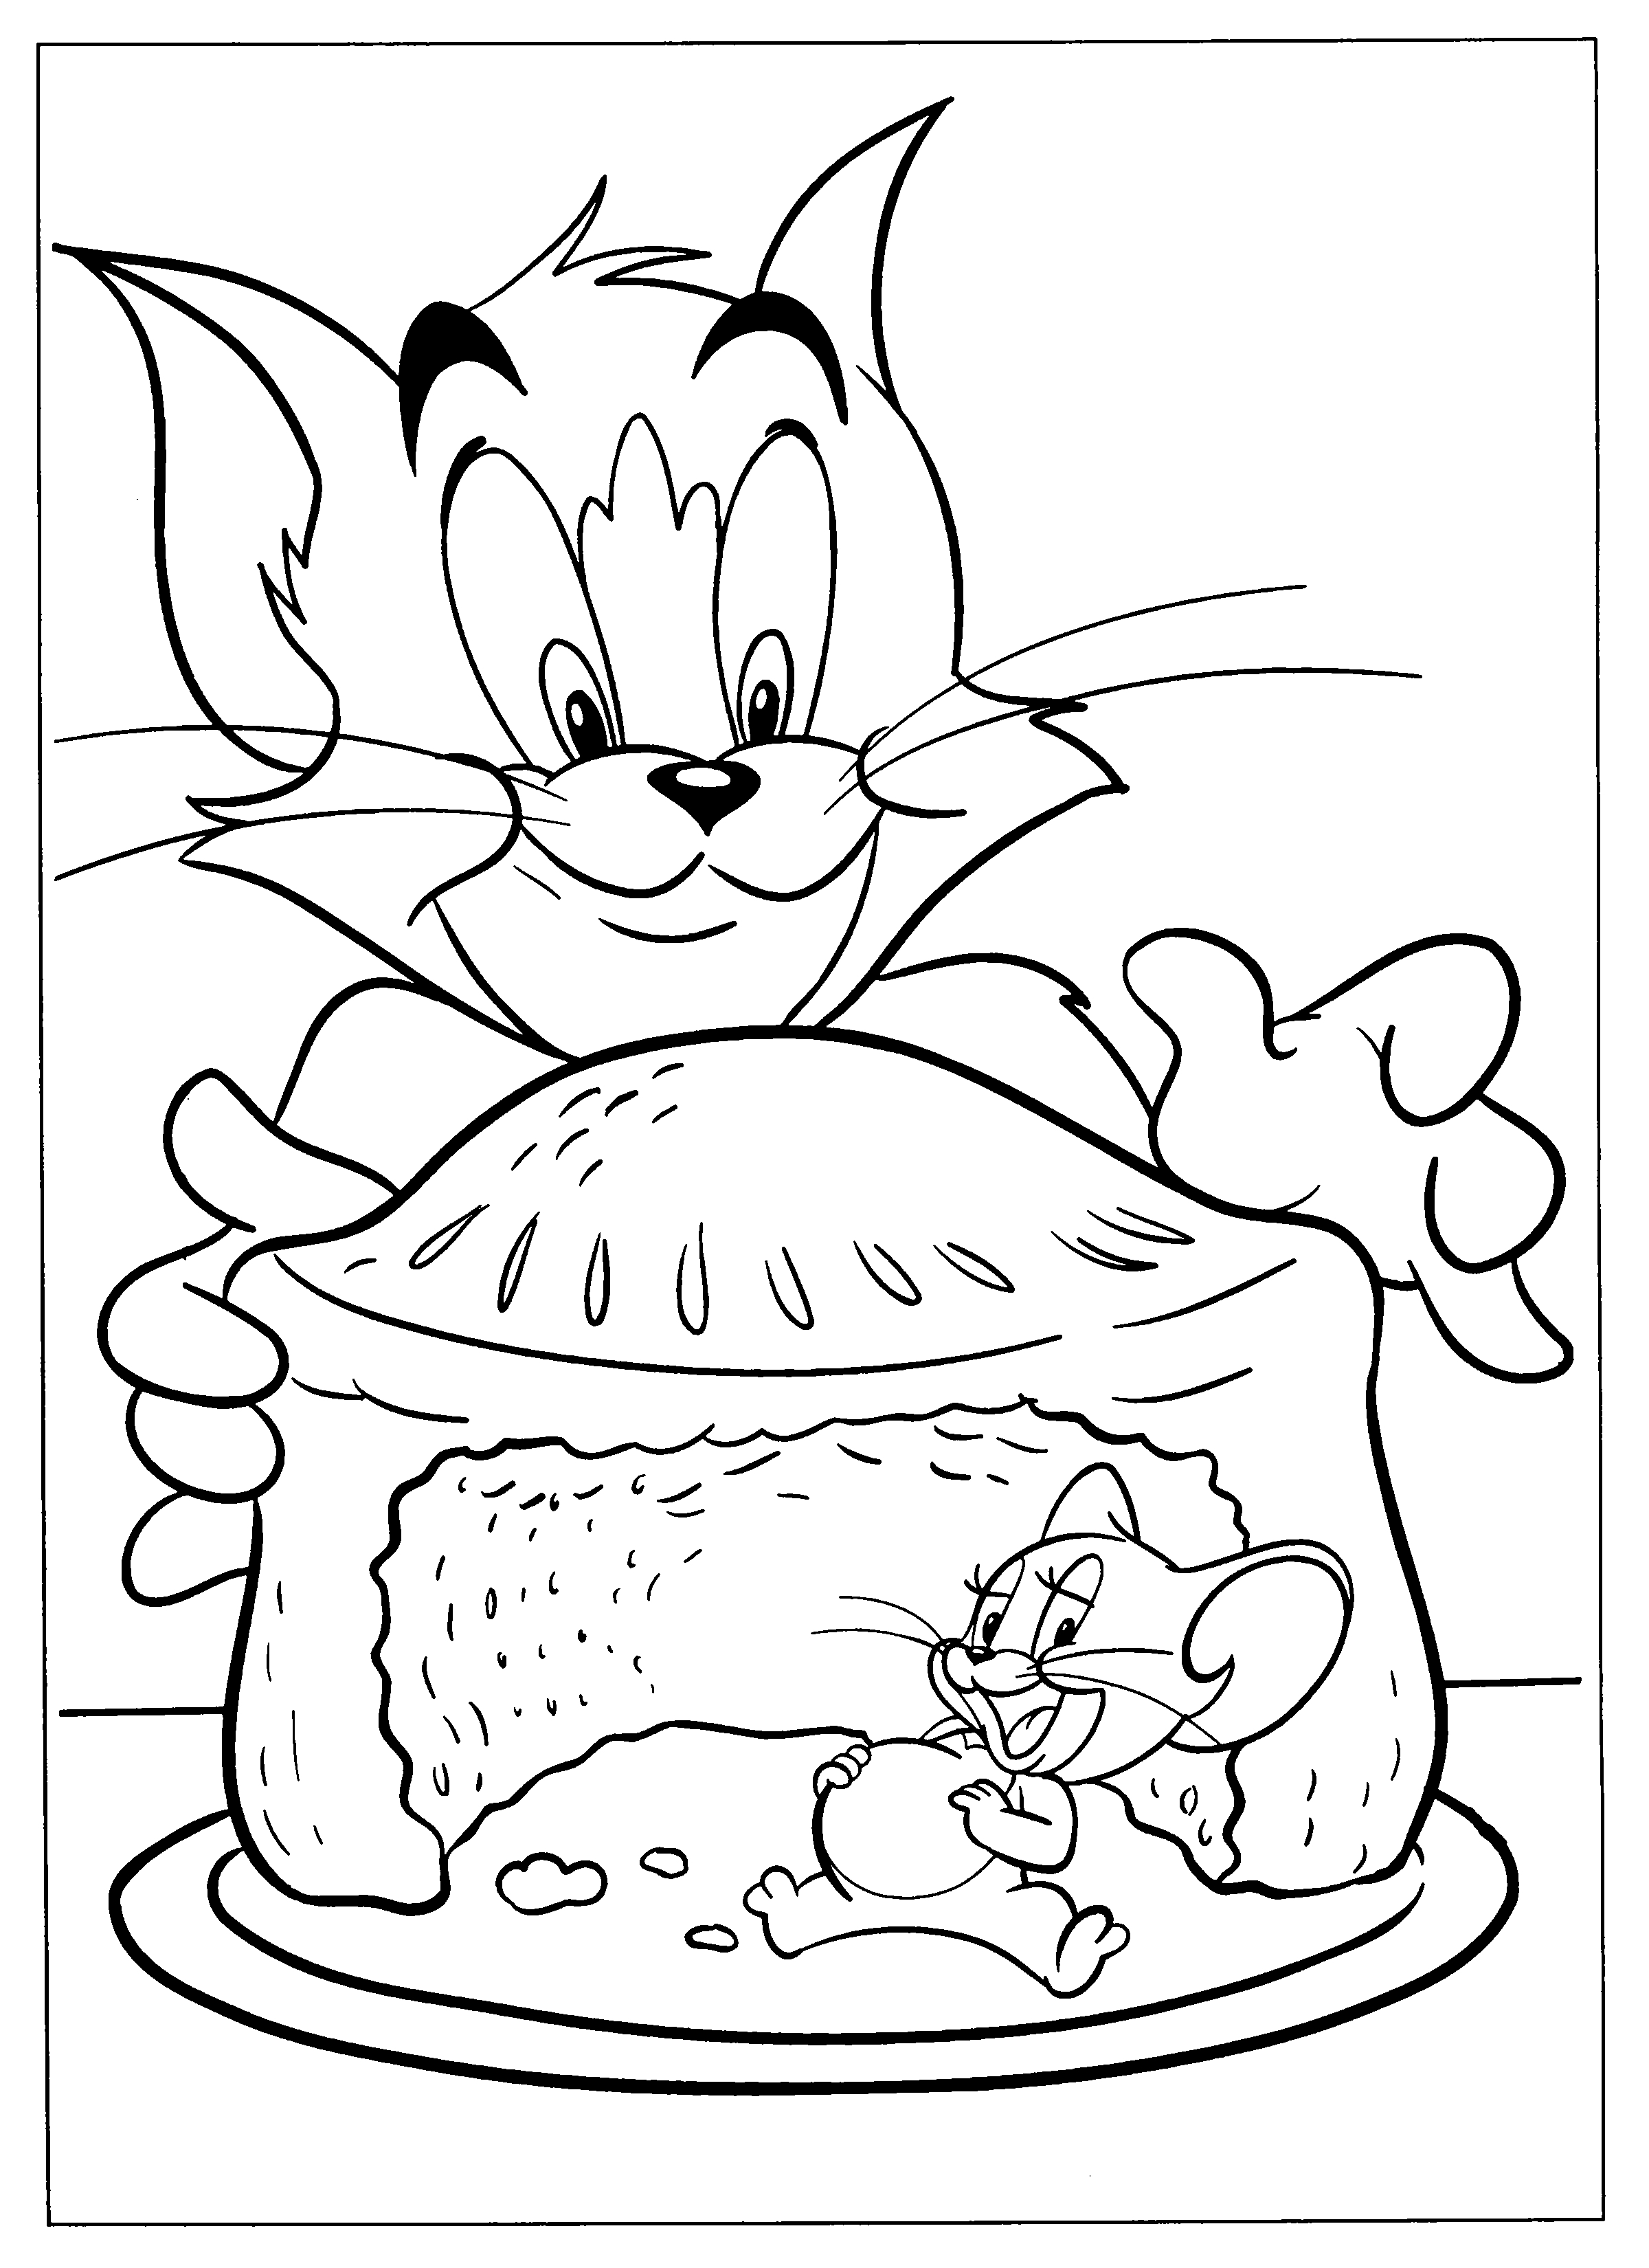 Dibujos Faciles para Dibujar Colorear y Pintar Tom y Jerry 1